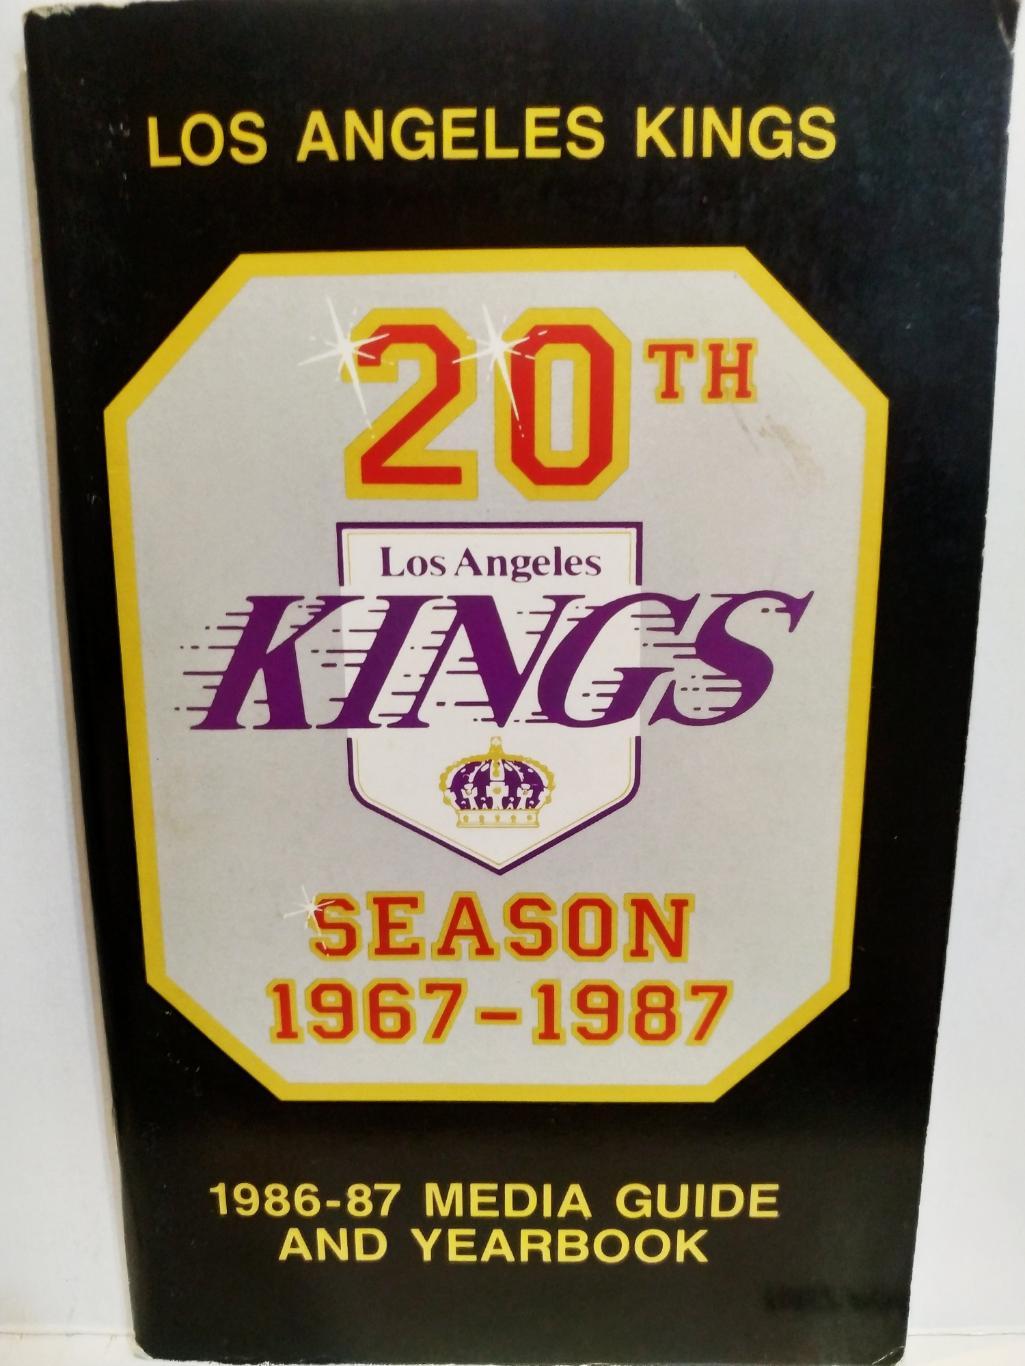 ХОККЕЙ СПРАВОЧНИК ЕЖЕГОДНИК НХЛ КИНГС 1967-87 LOS ANGELES KINGS YEARBOOK